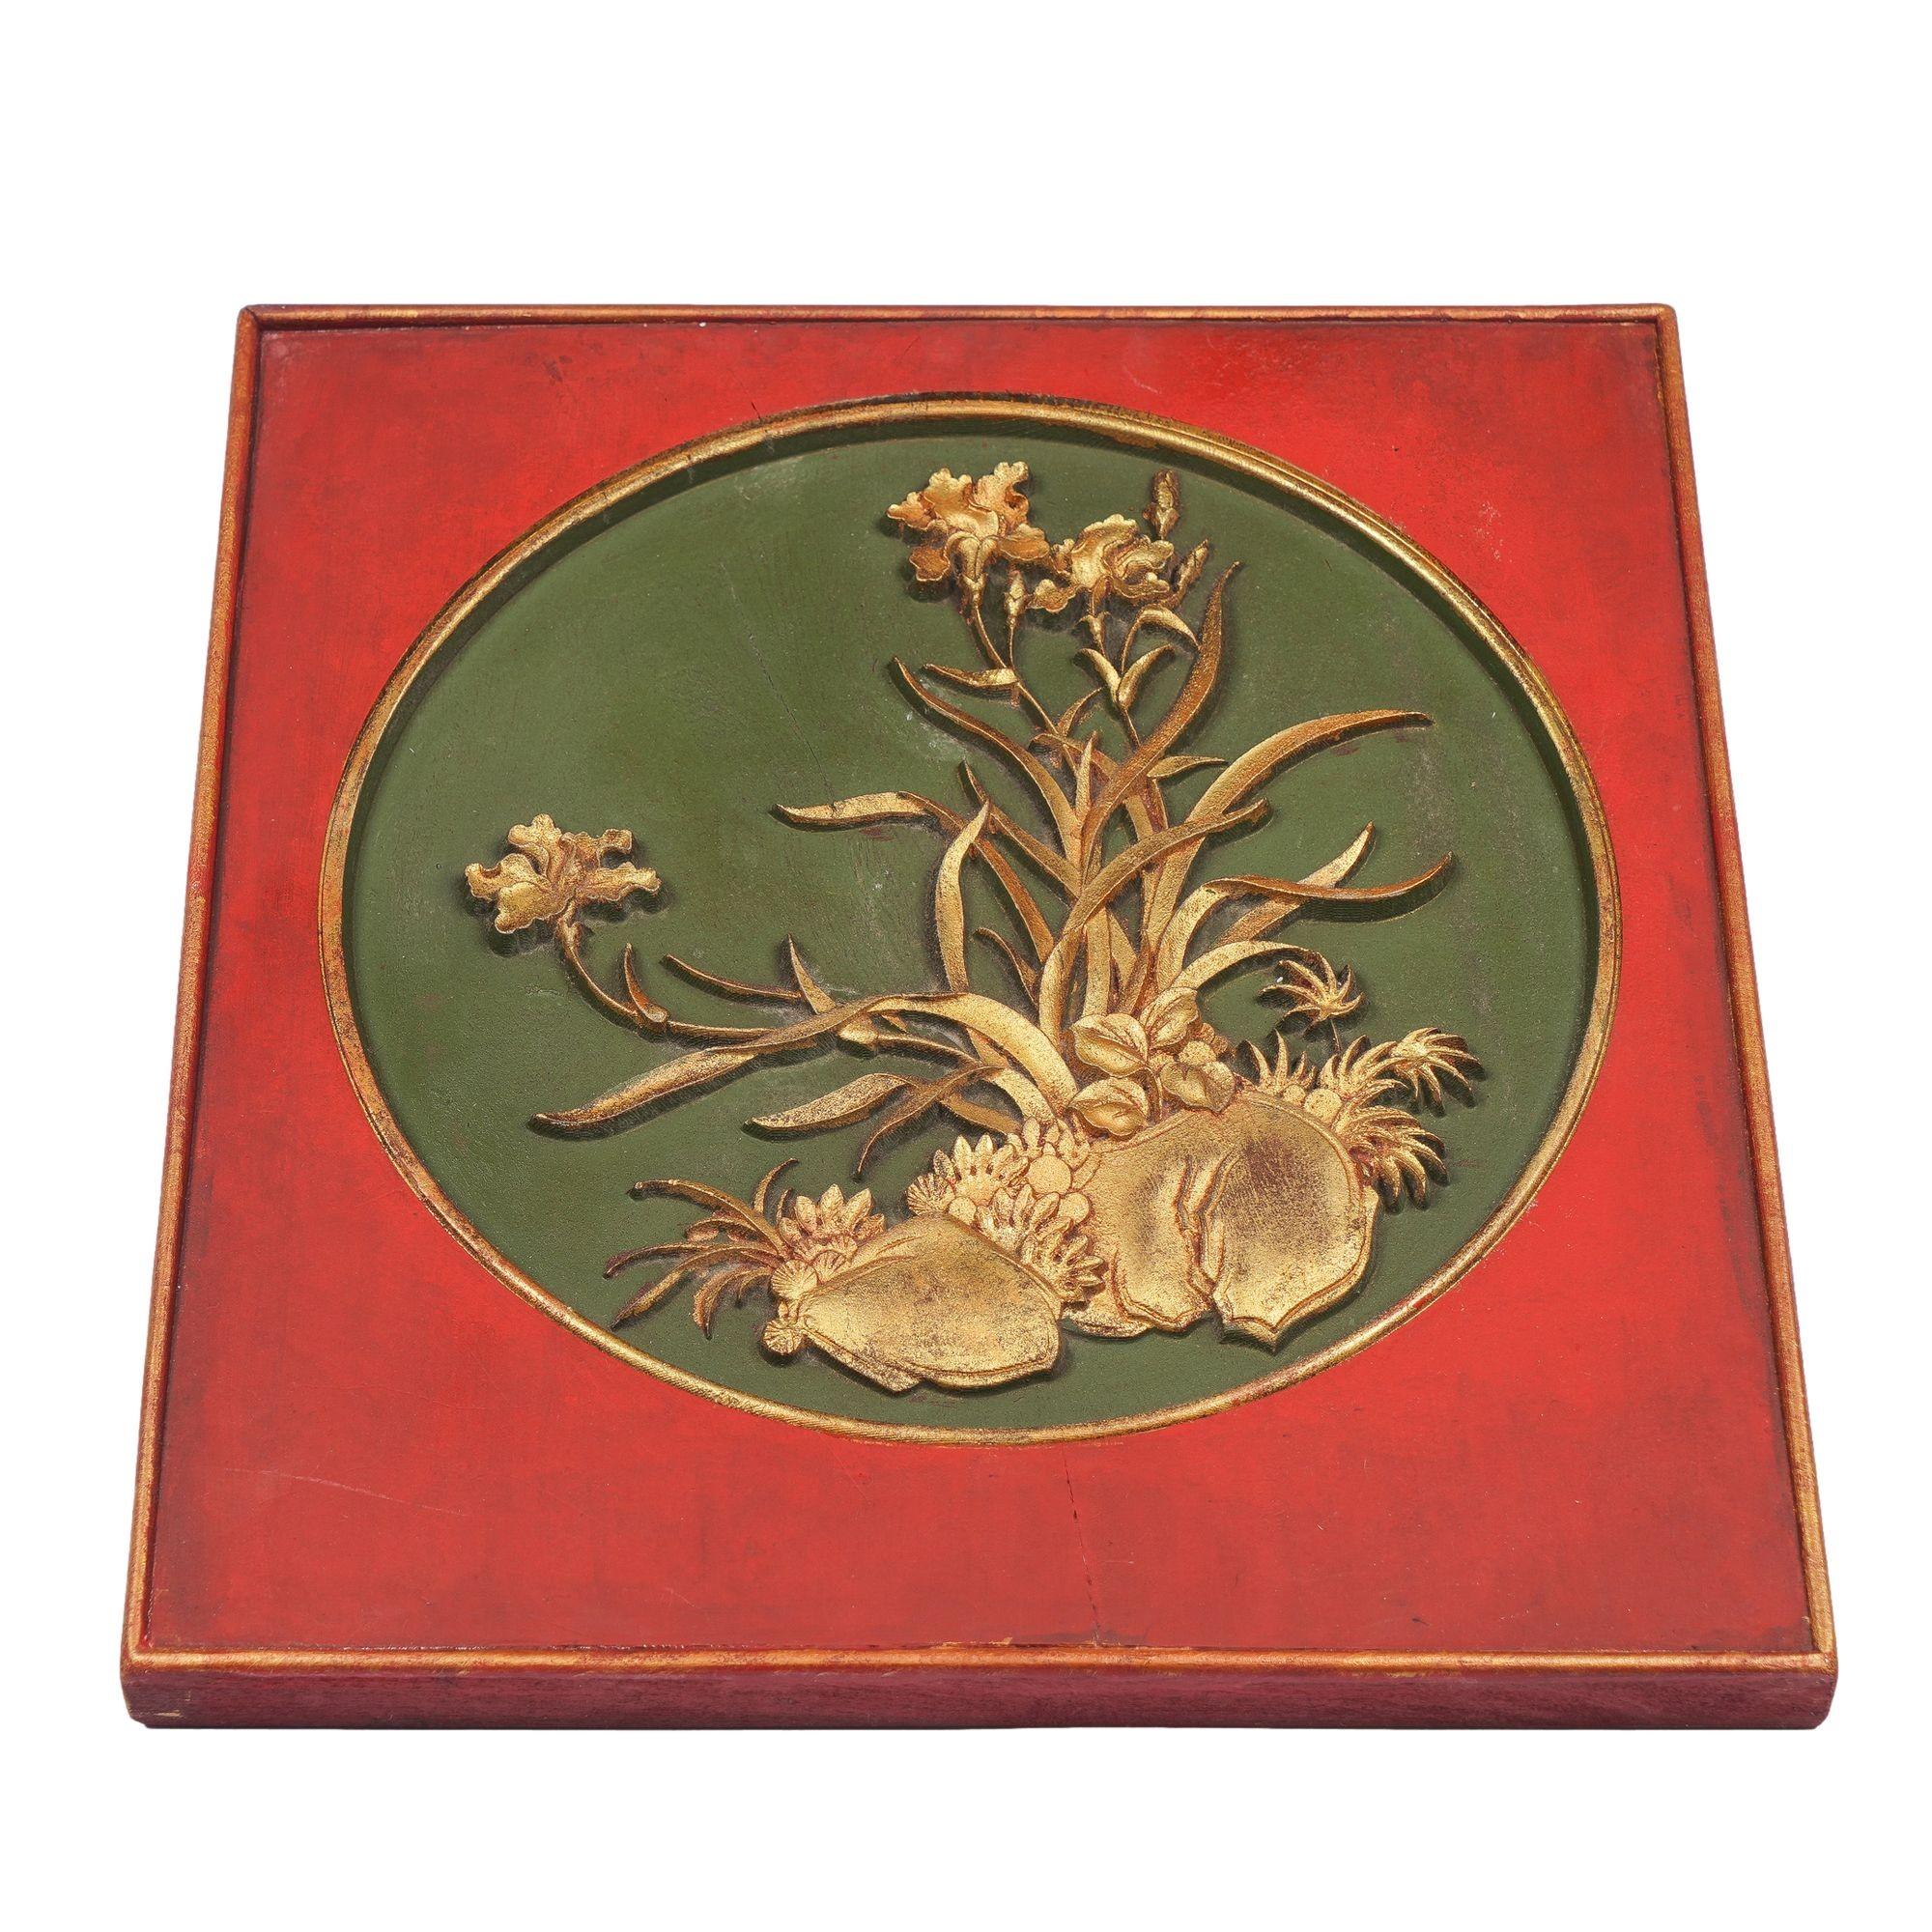 Panneau de bois carré peint en laque rouge avec un insert circulaire comportant un cartouche doré sculpté peu profond sur un fond peint en vert.
Chine, dynastie Qing, XIXe siècle.